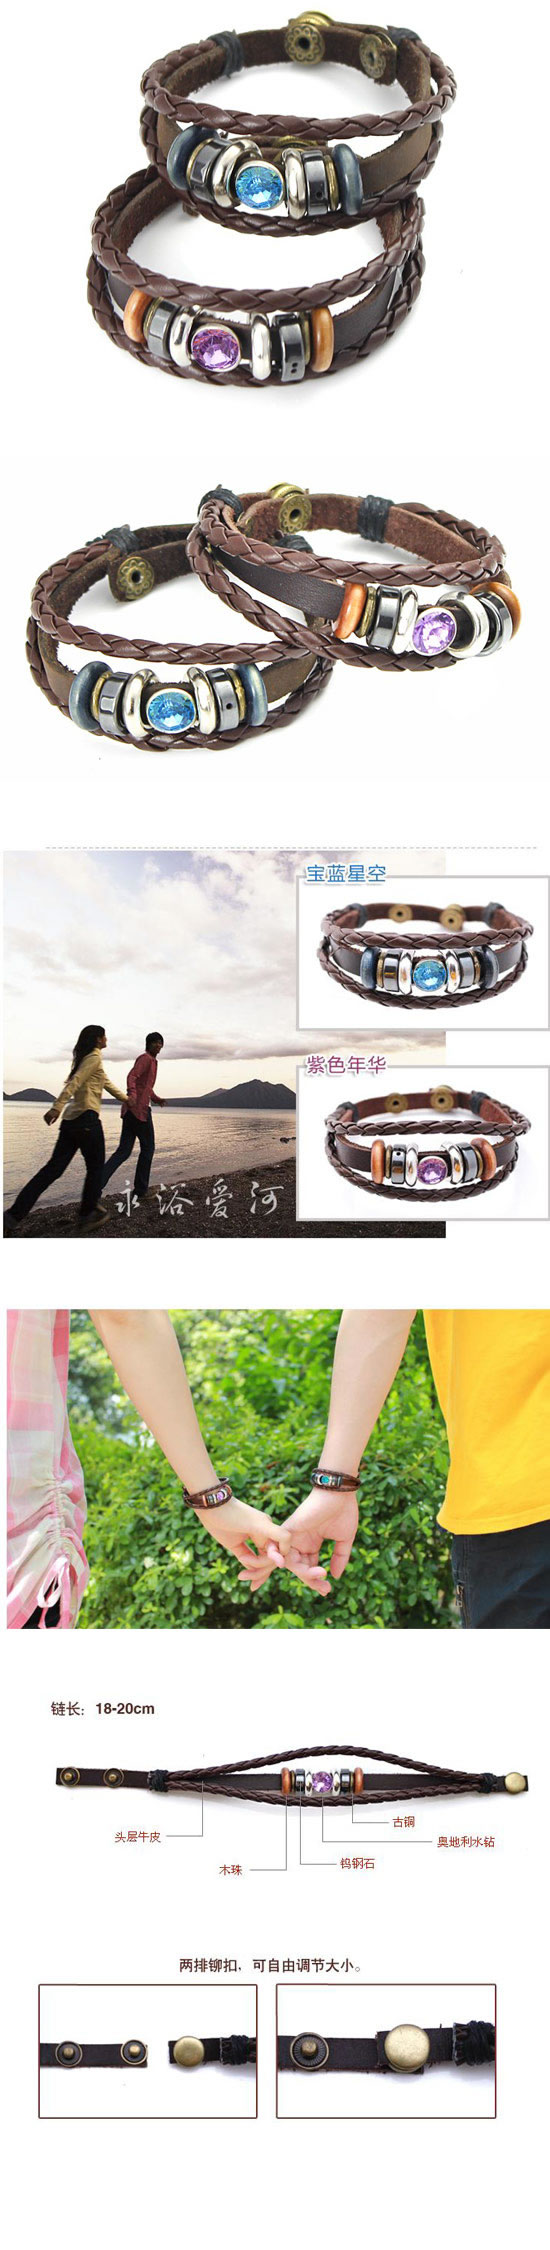 Torrid Coffee Personality Weave Designp PU Korean Fashion Bracelet,Fashion Bracelets